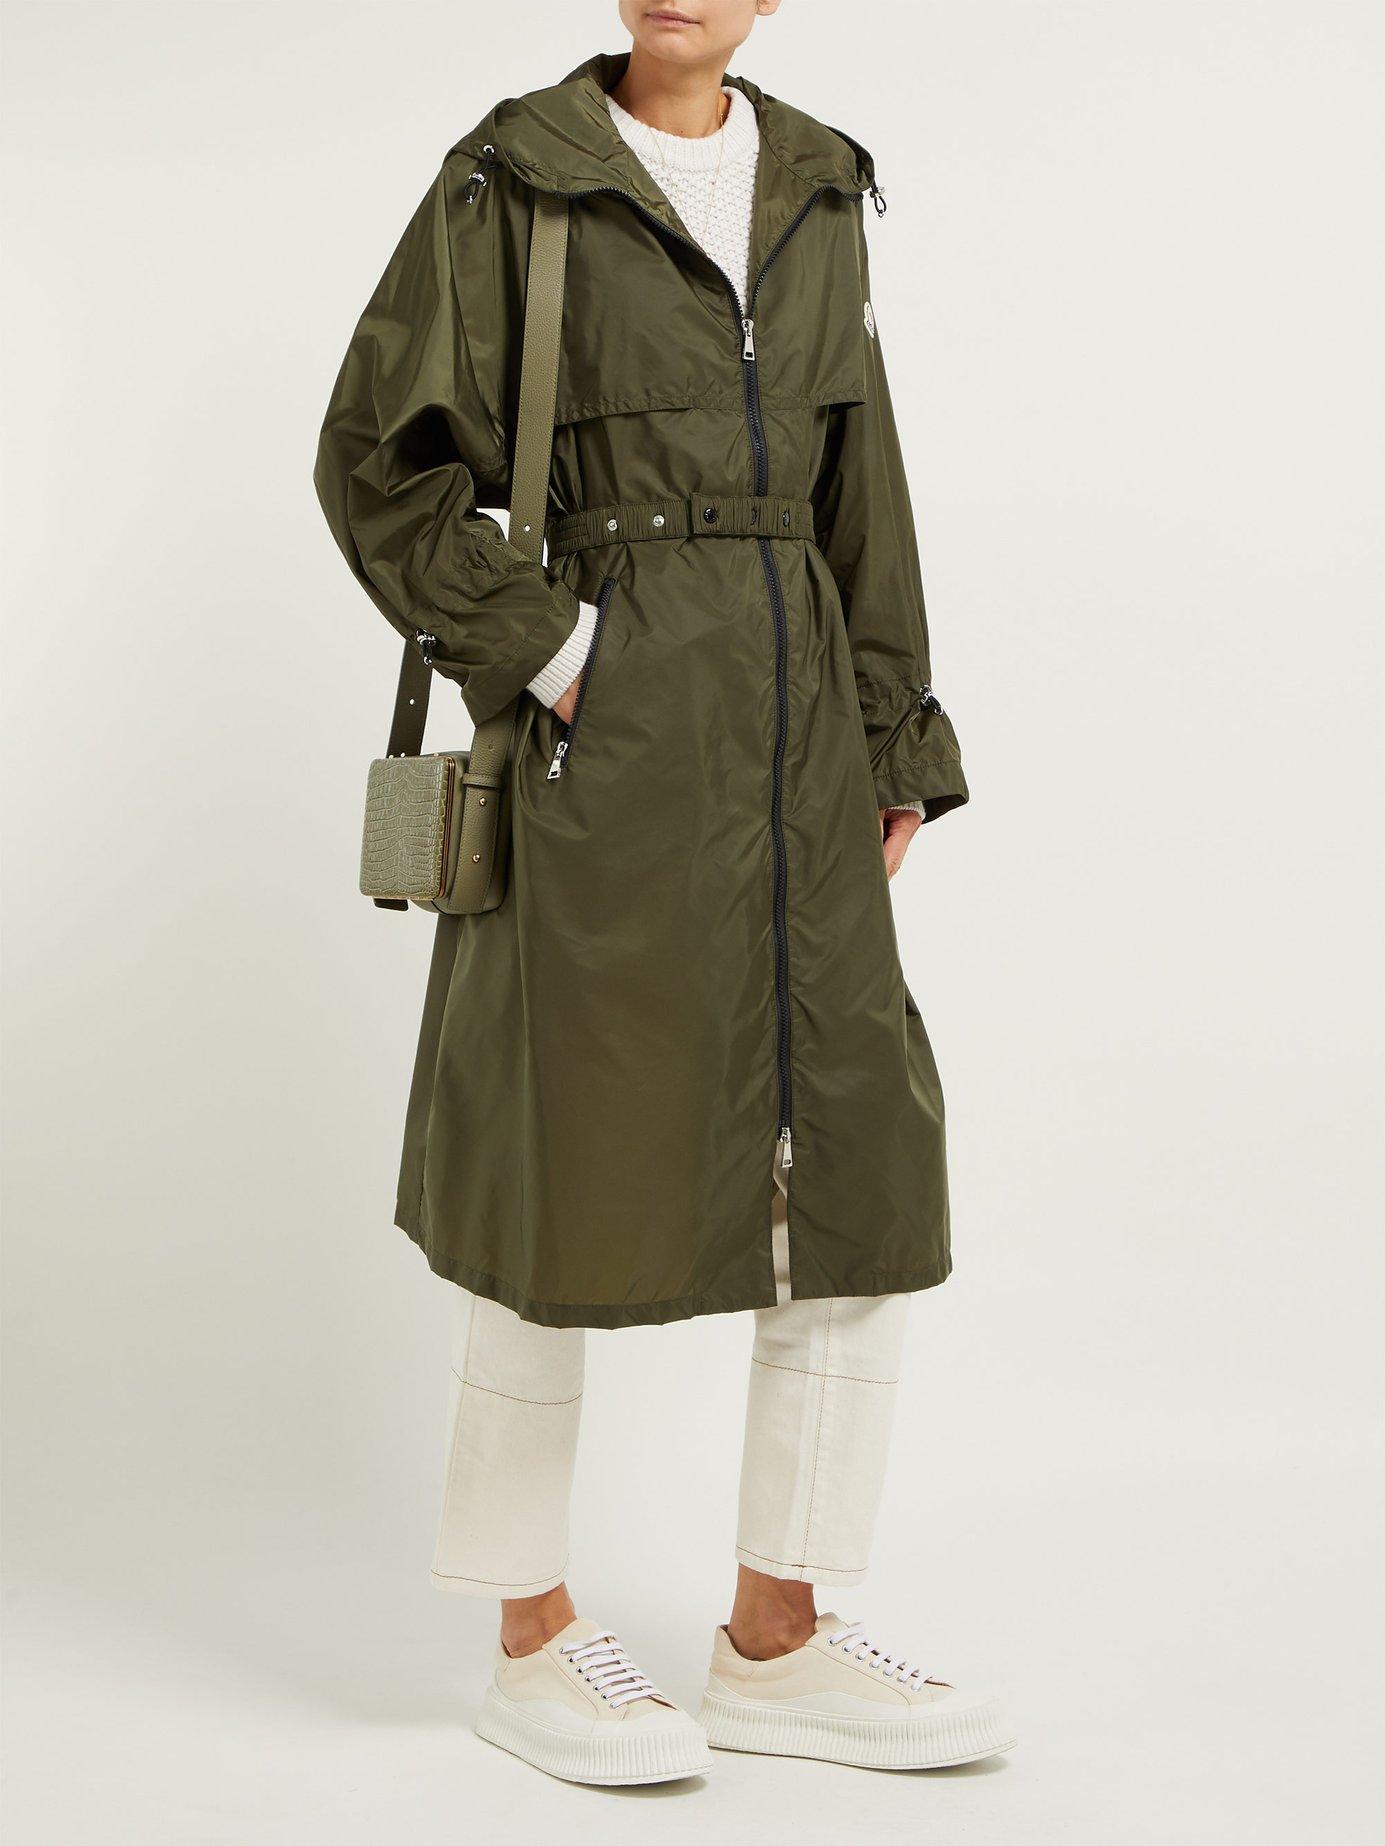 moncler washington raincoat